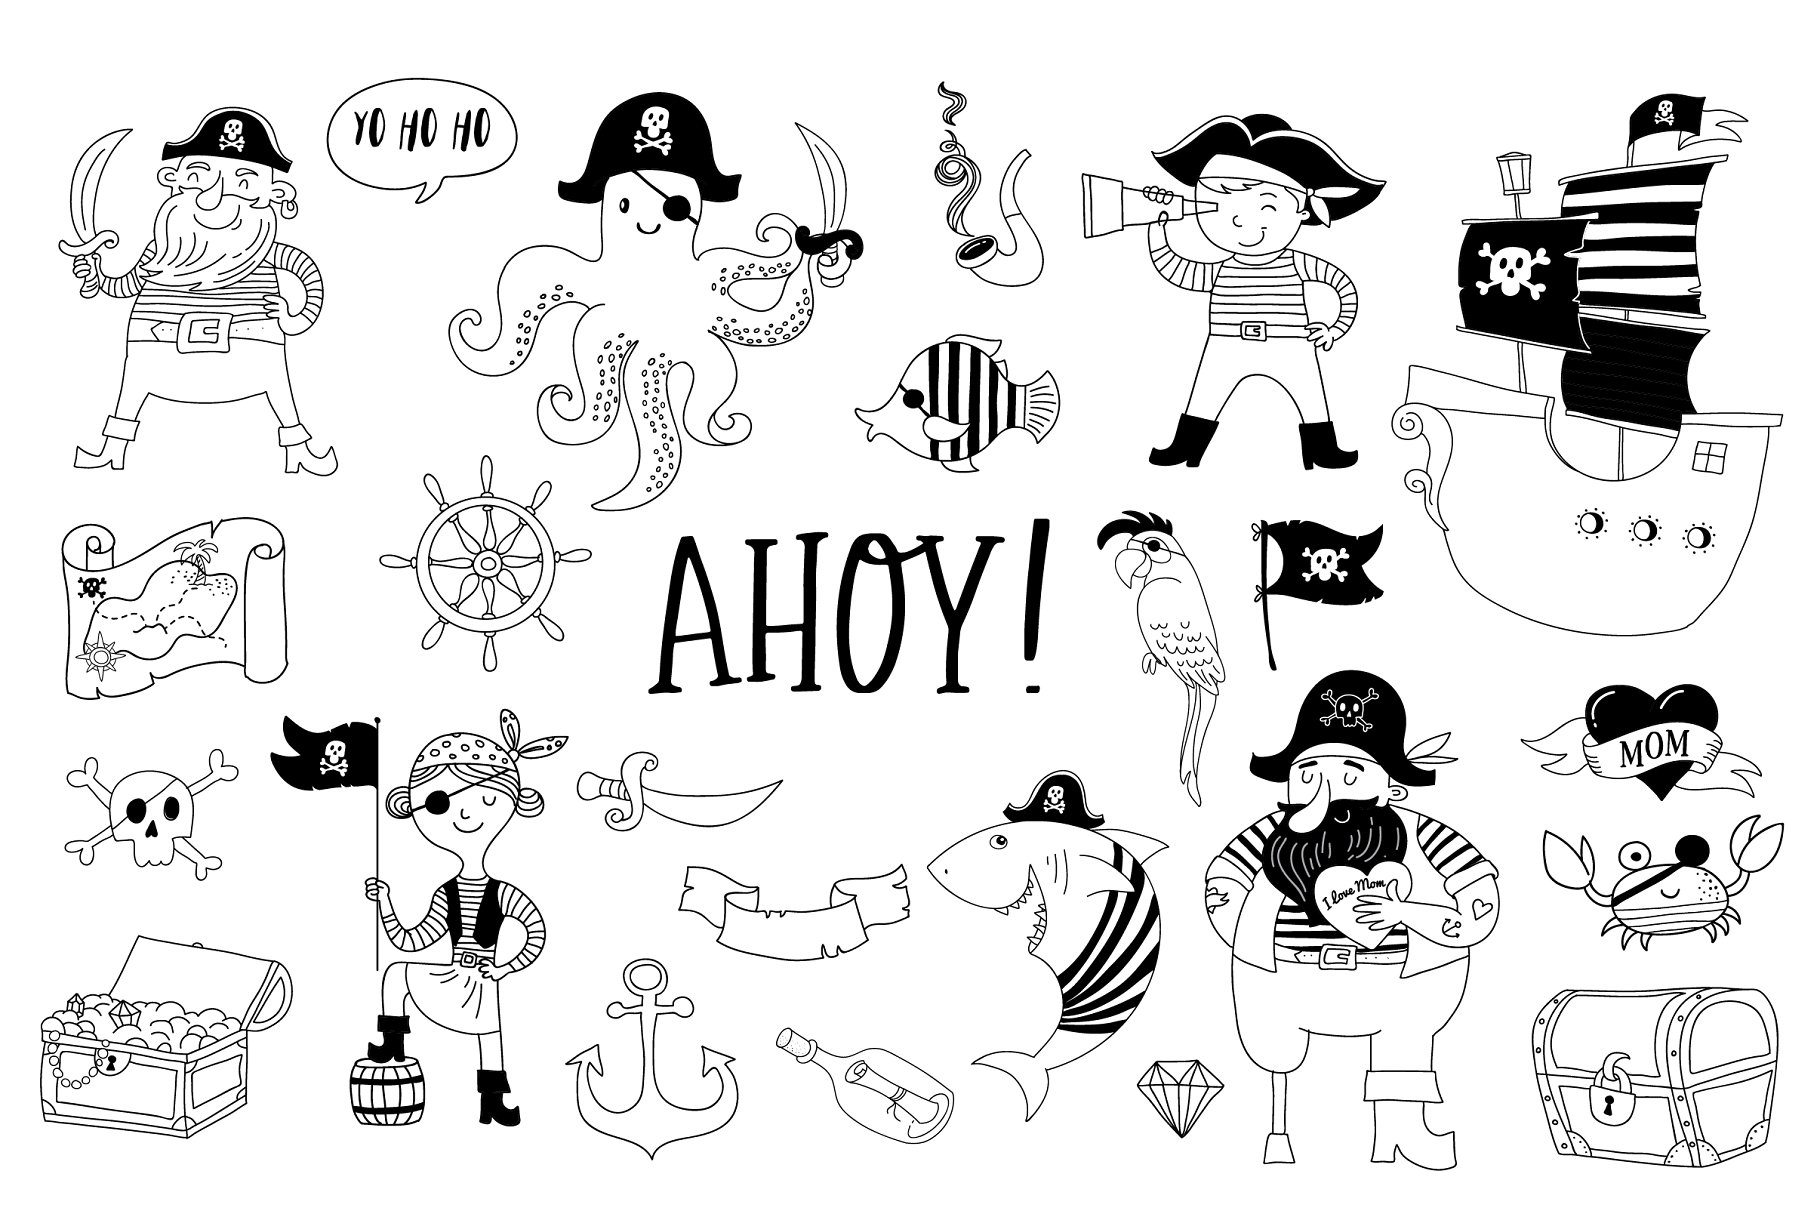 海盗船系列马克笔手绘卡通插画 Ahoy! Pirate collection插图5